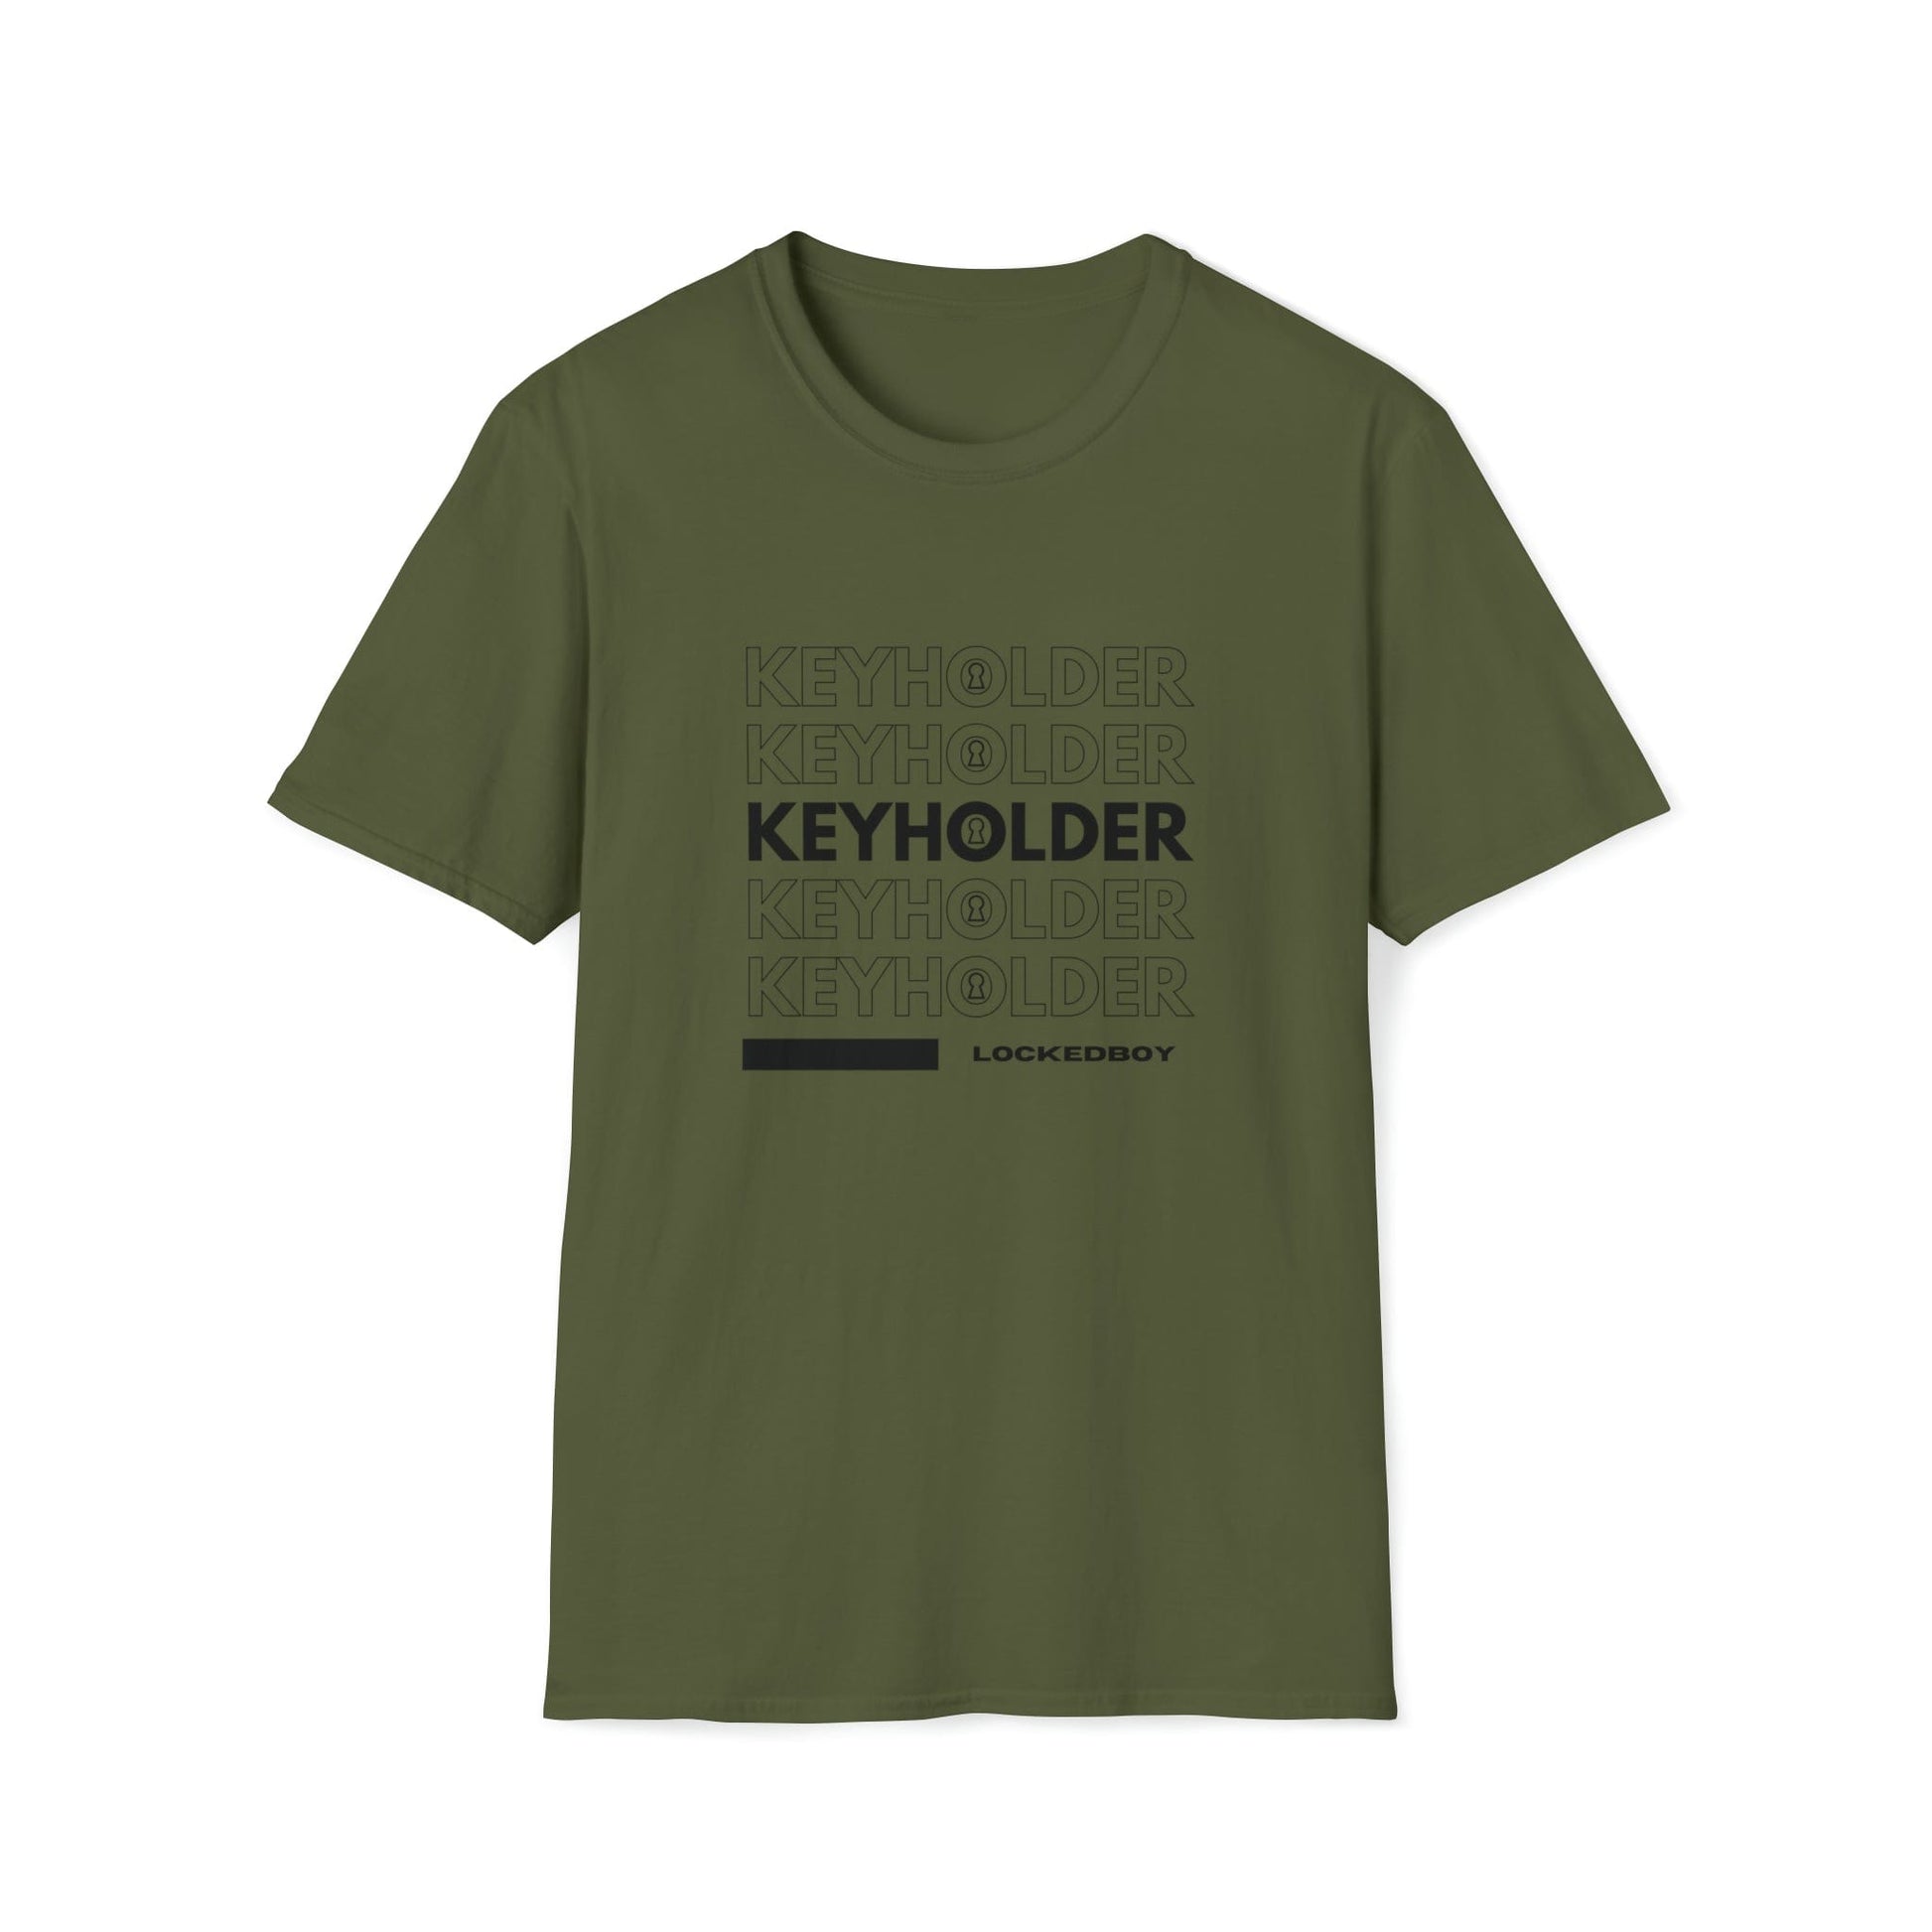 T-Shirt Military Green / S KEYHOLDER bag Inspo - Chastity Shirts by LockedBoy Athletics LEATHERDADDY BATOR